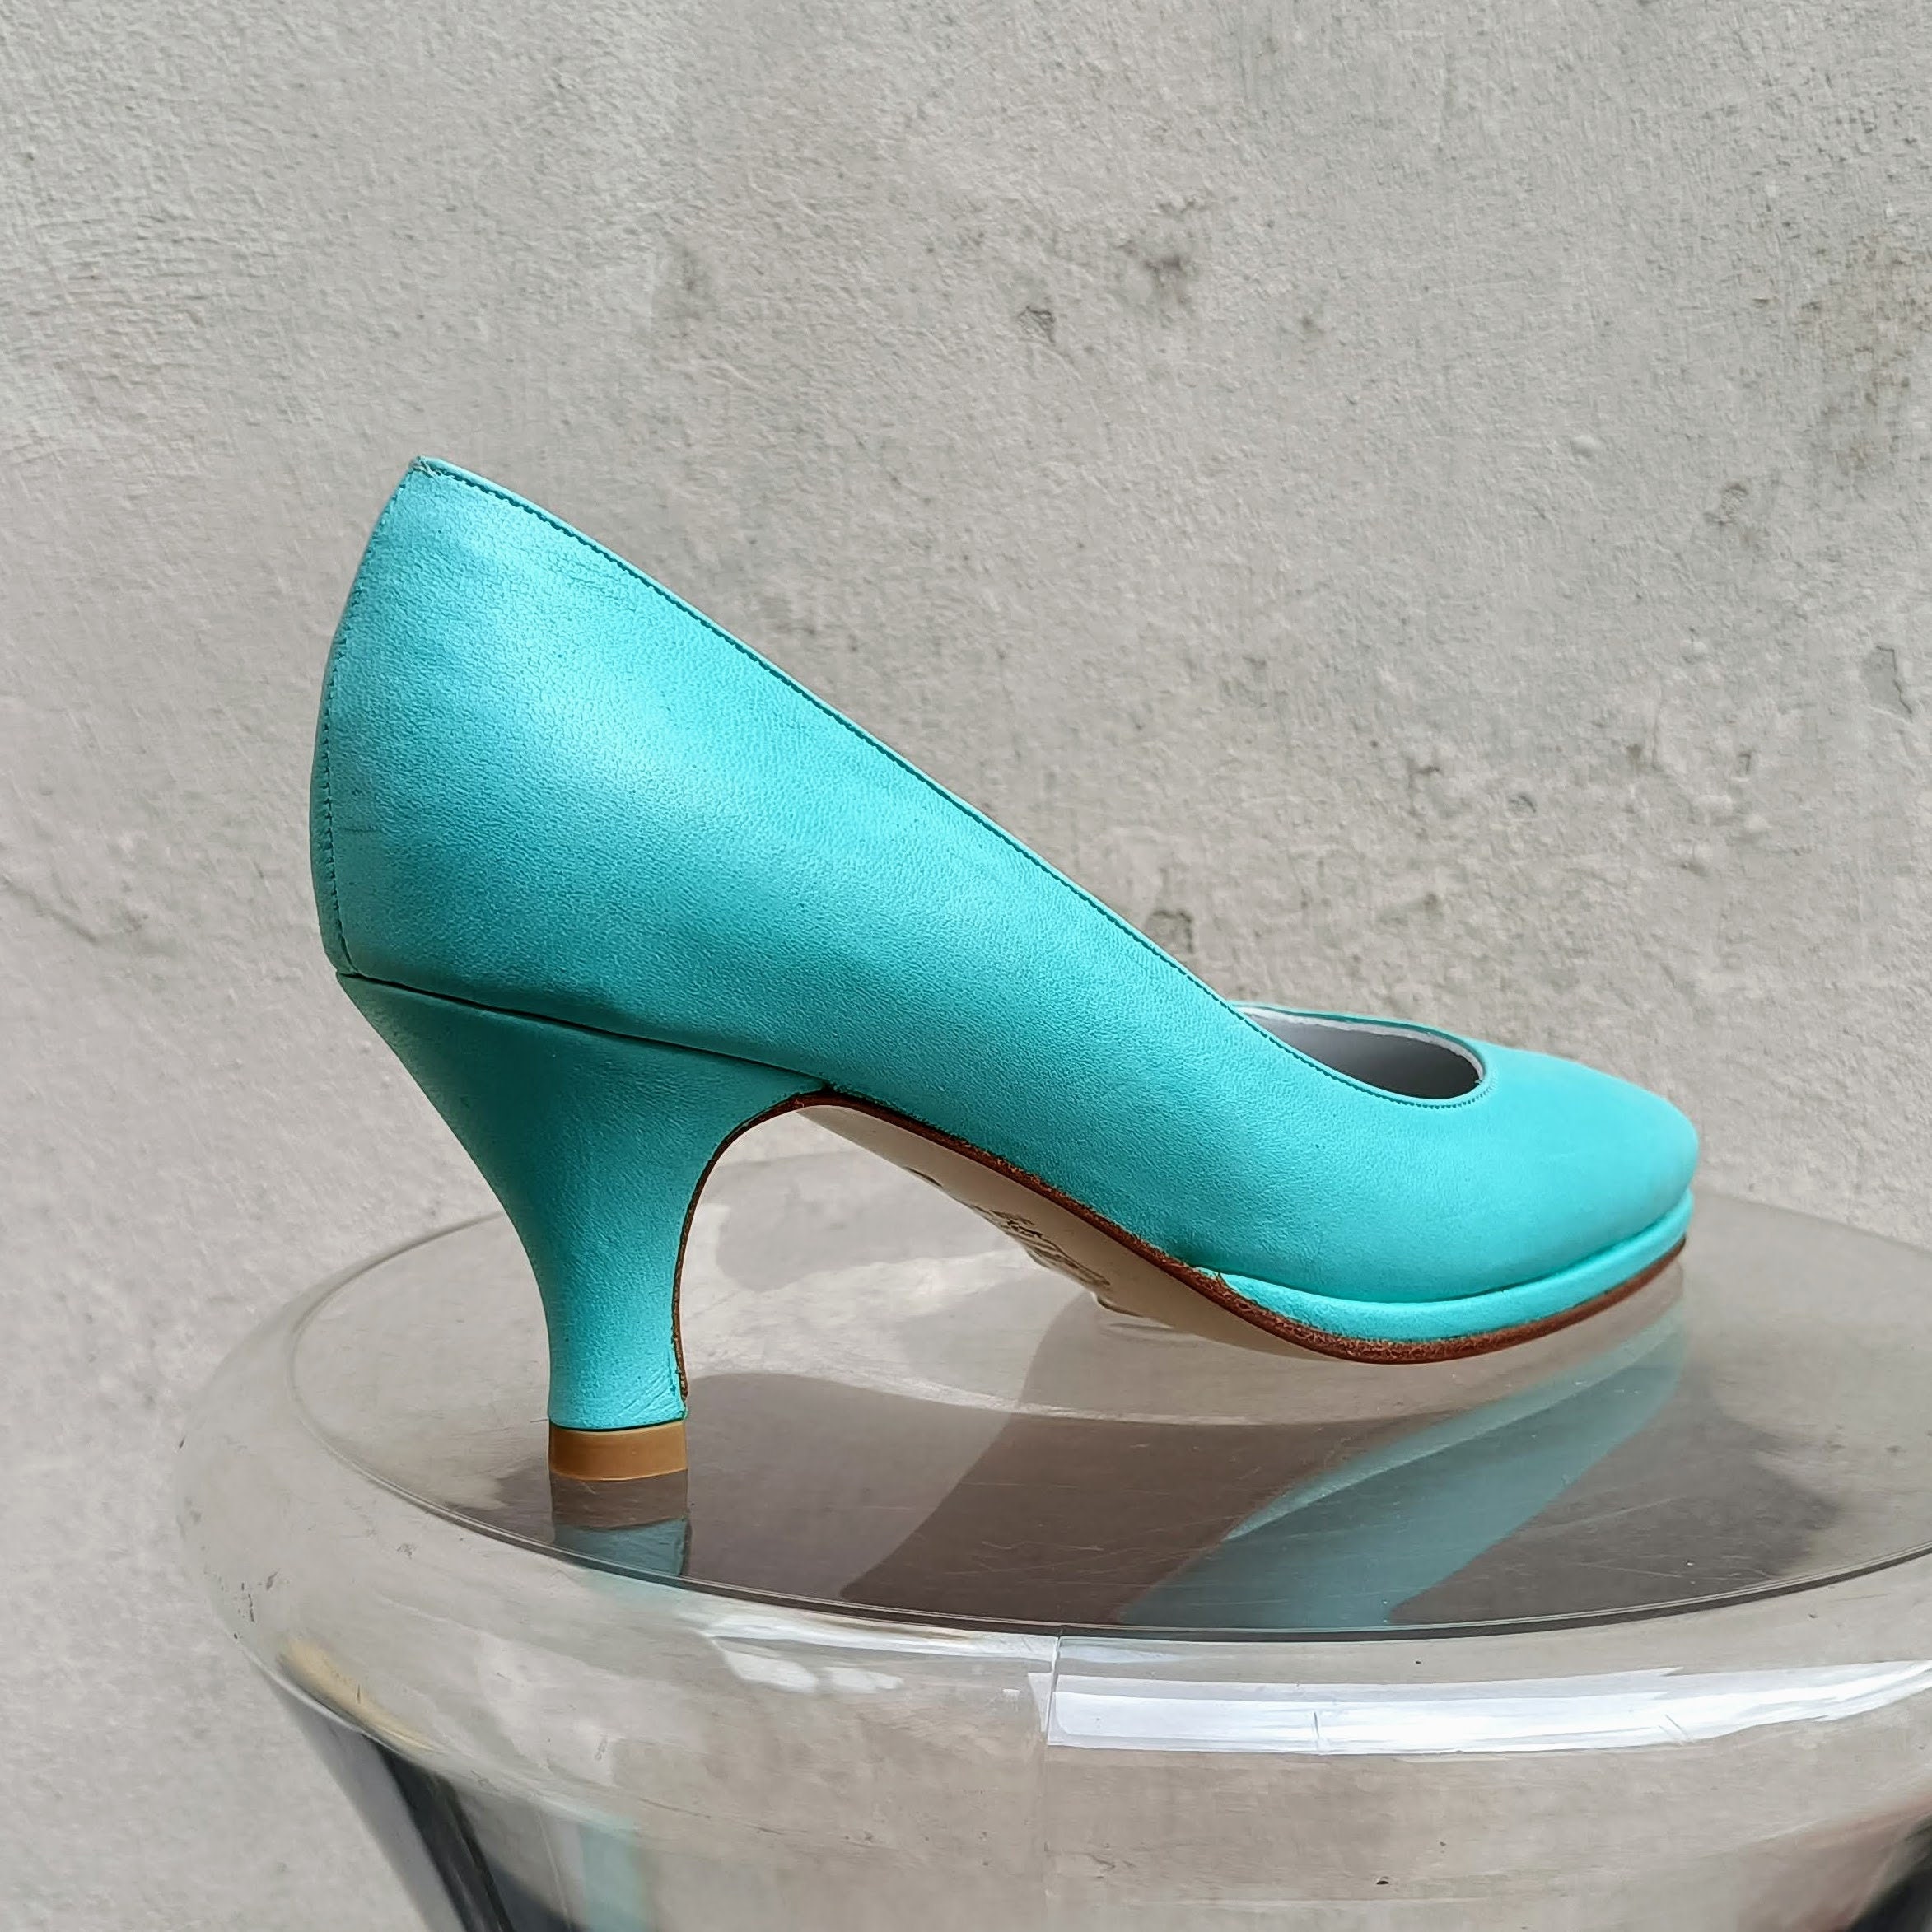 Blue Embellished Ankle Strap Heel For Women